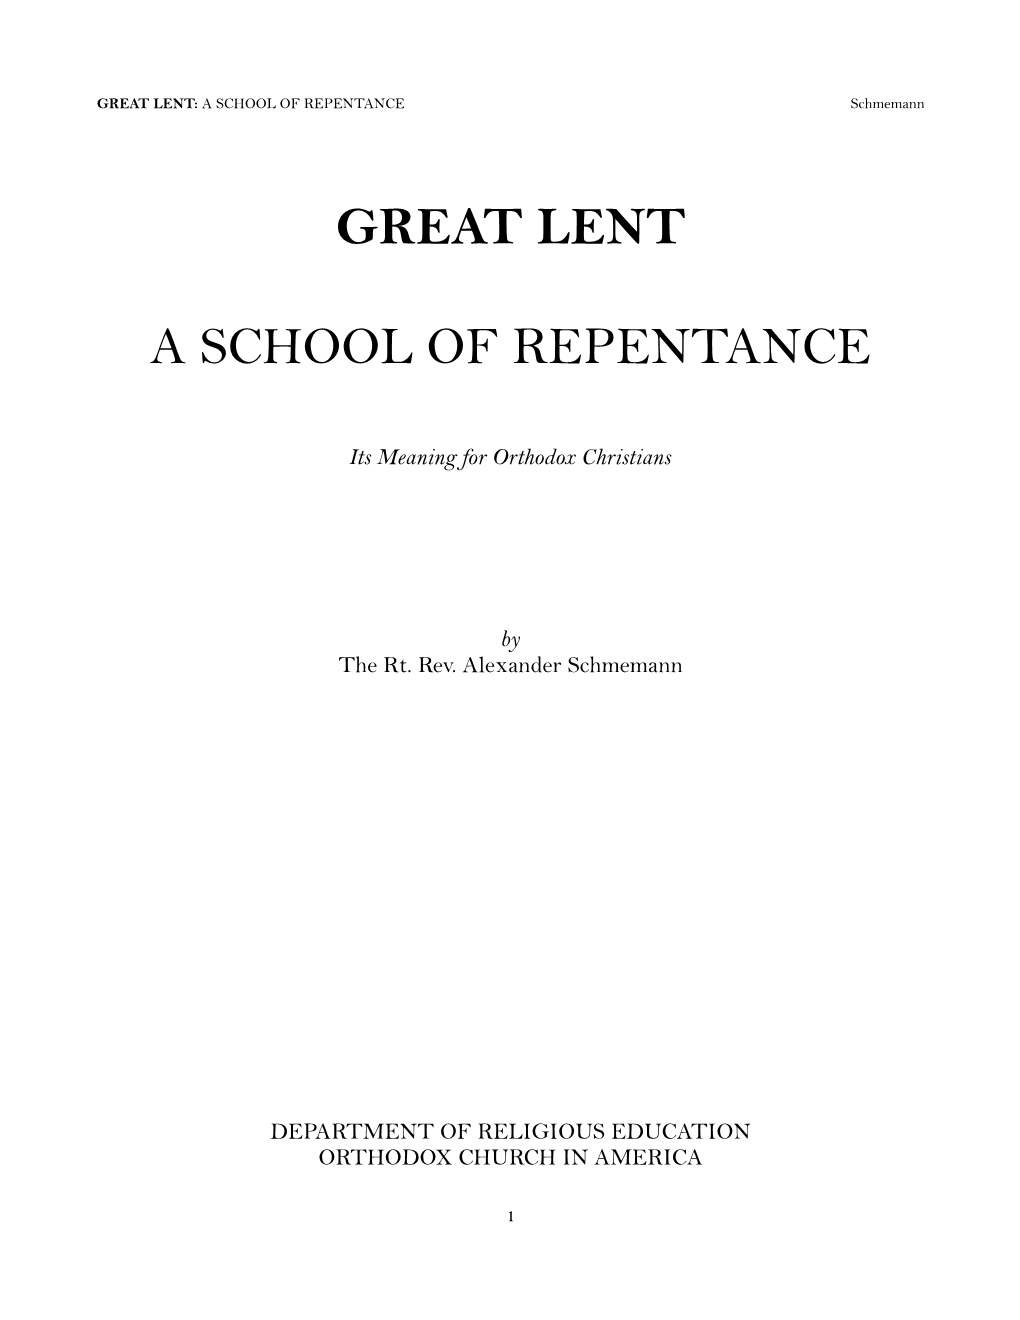 Great Lent: a School of Repentance by Fr. Alexander Schmemann